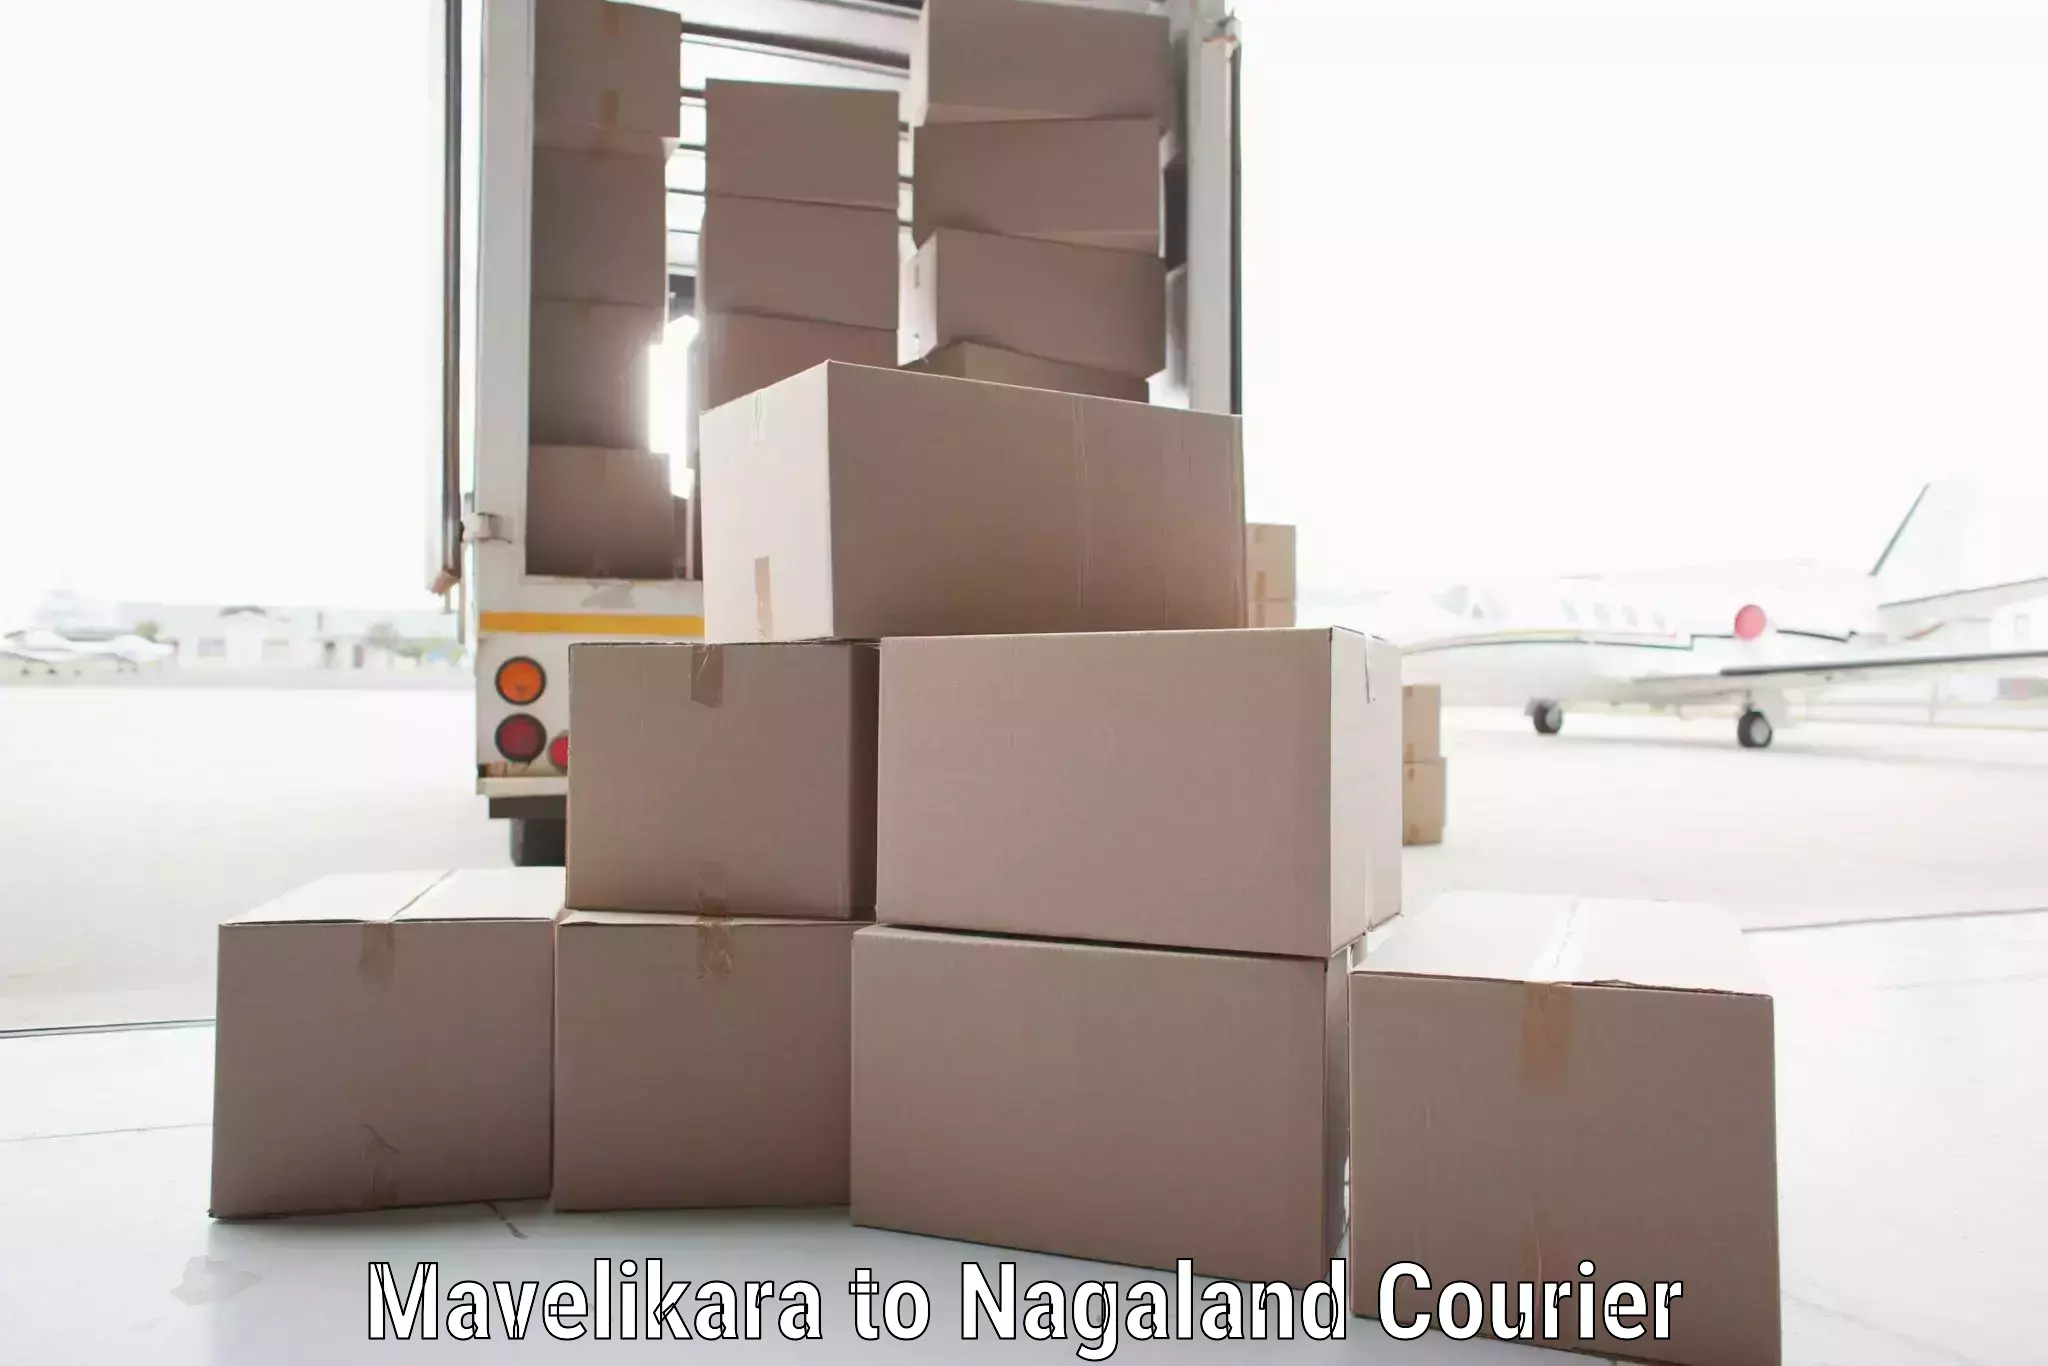 Speedy delivery service Mavelikara to Nagaland